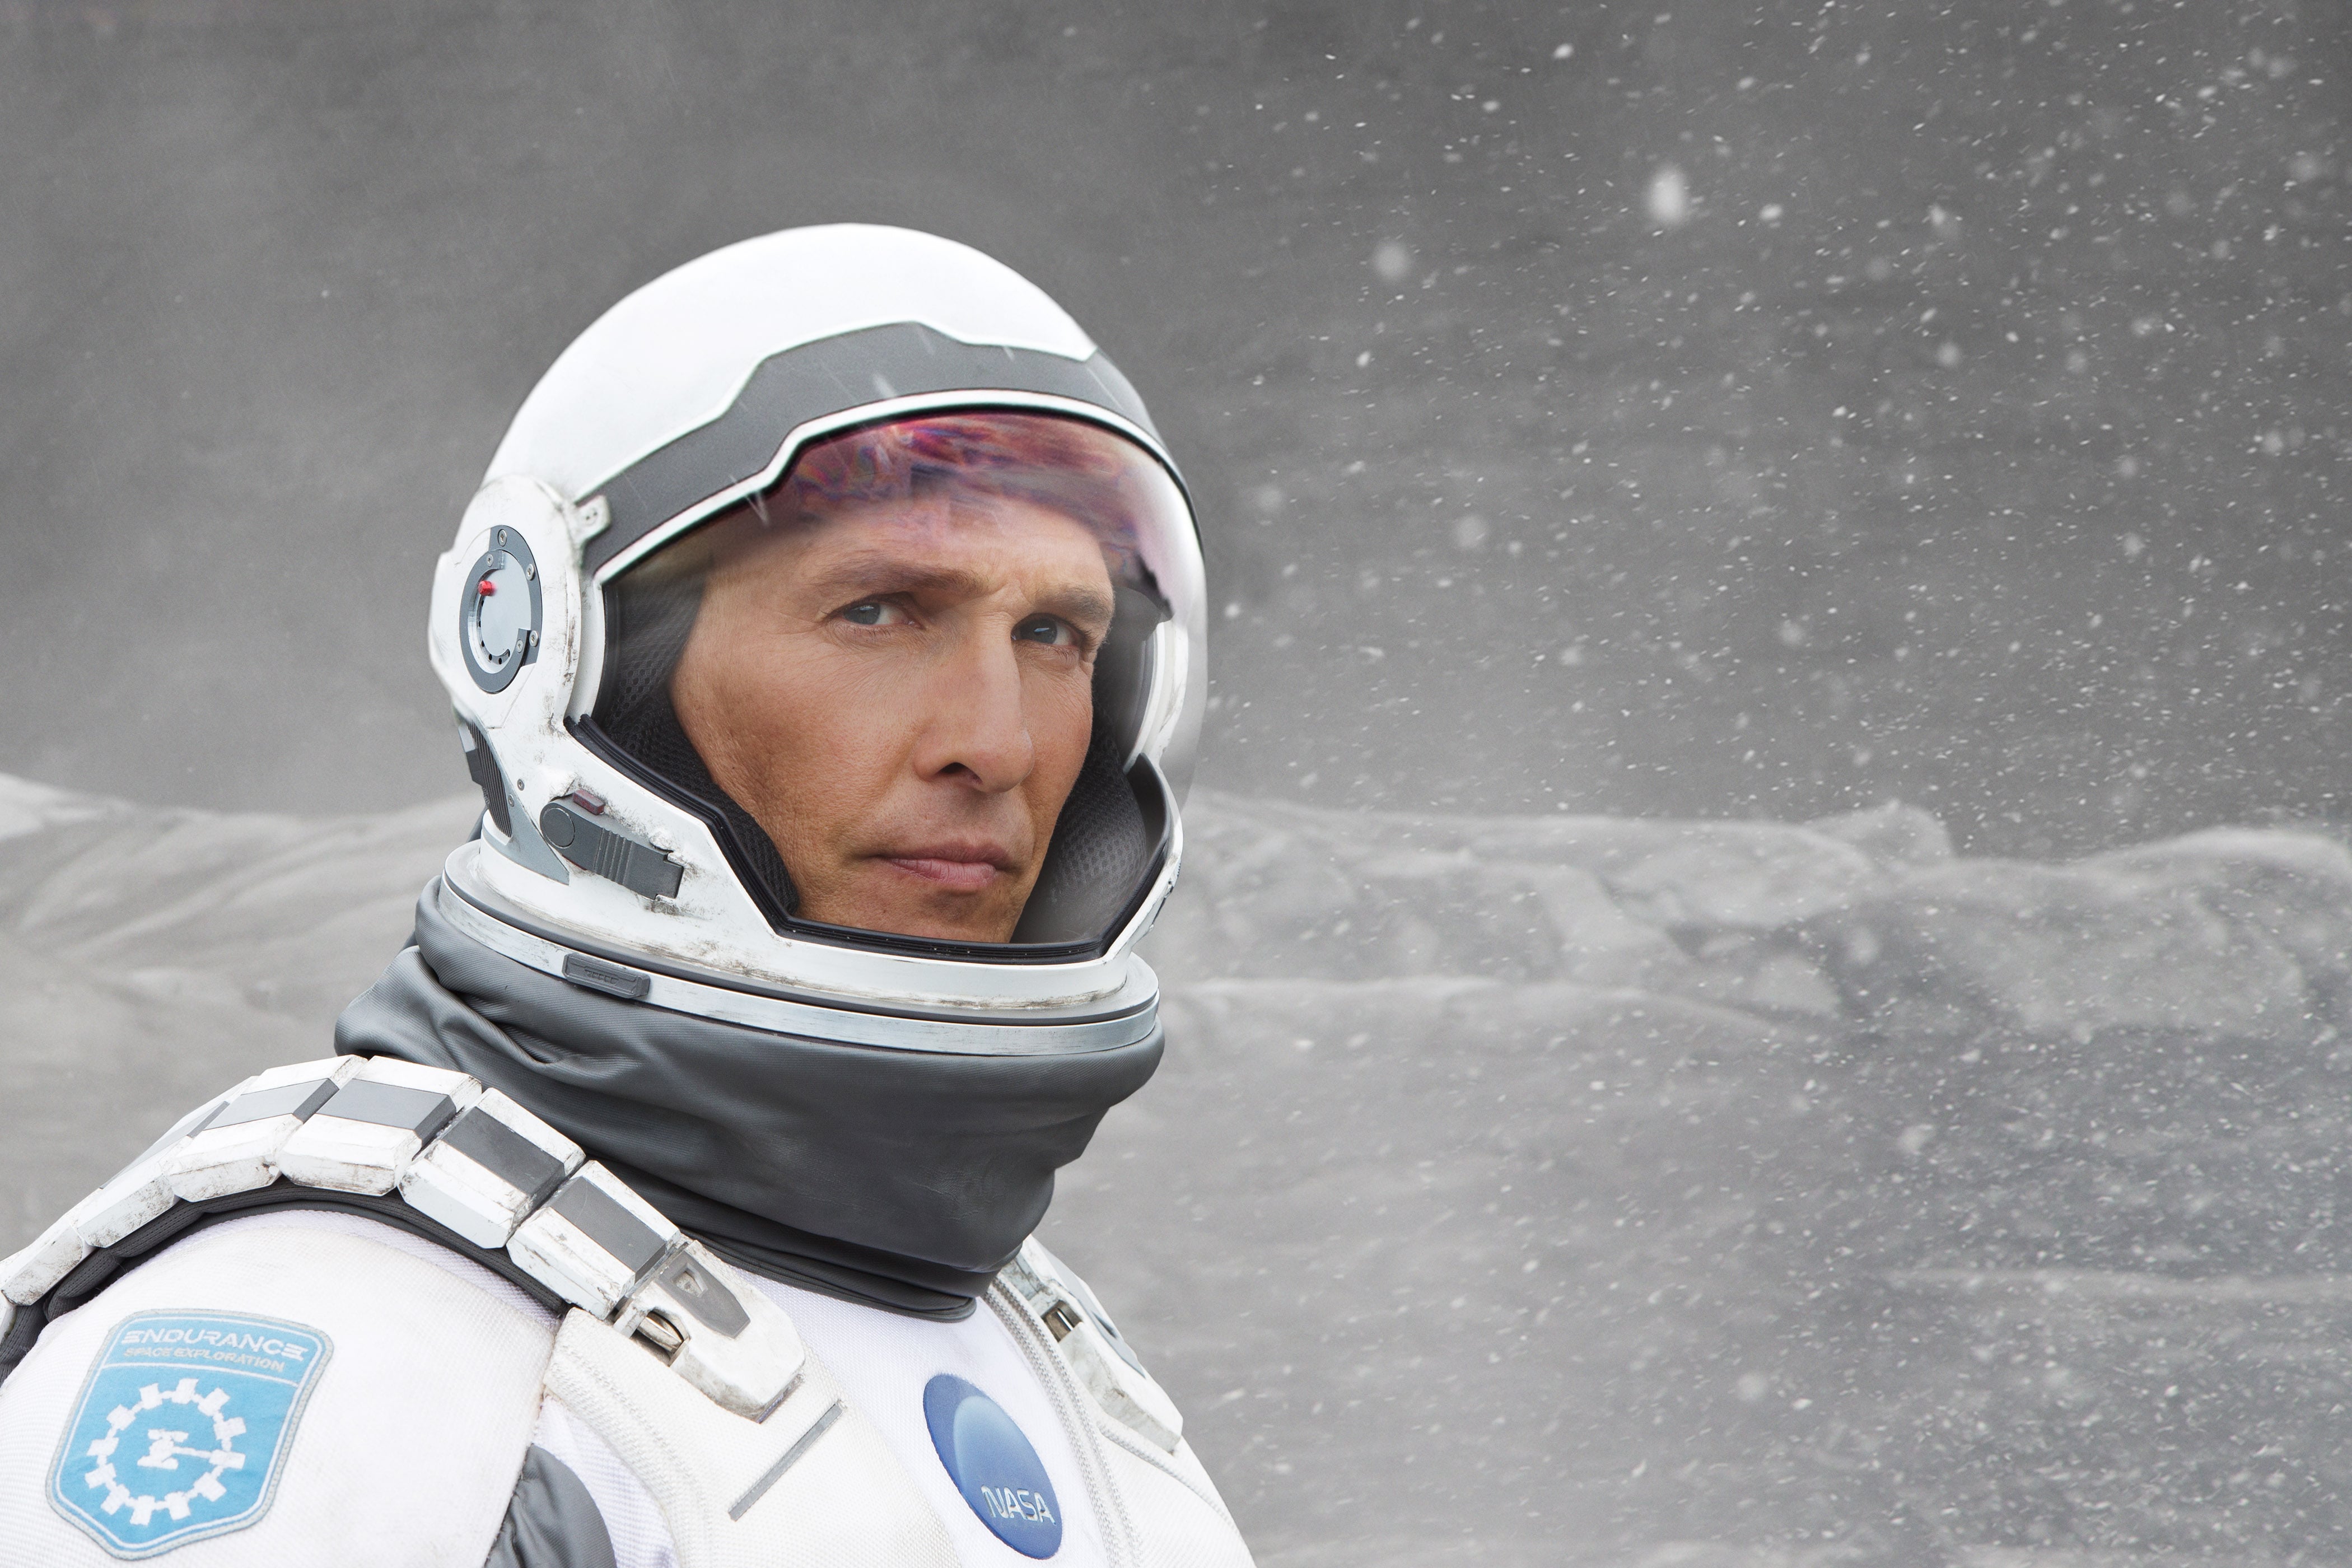 Would we want a second Interstellar movie? : r/interstellar